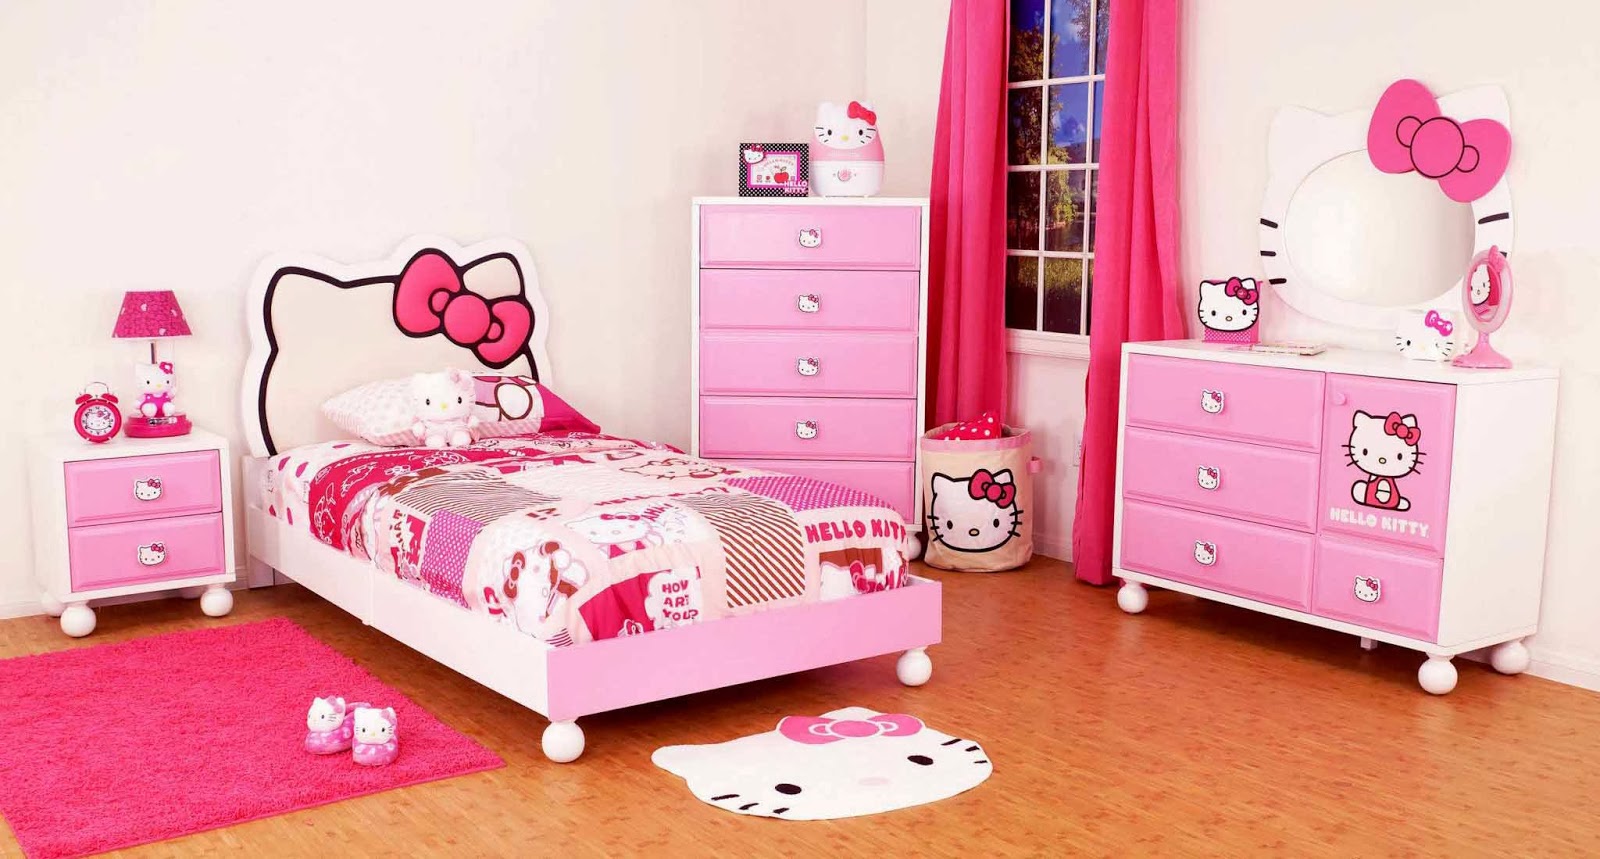 Foto Desain Kamar Tidur Anak Cewek Simple Warna Pink Desain